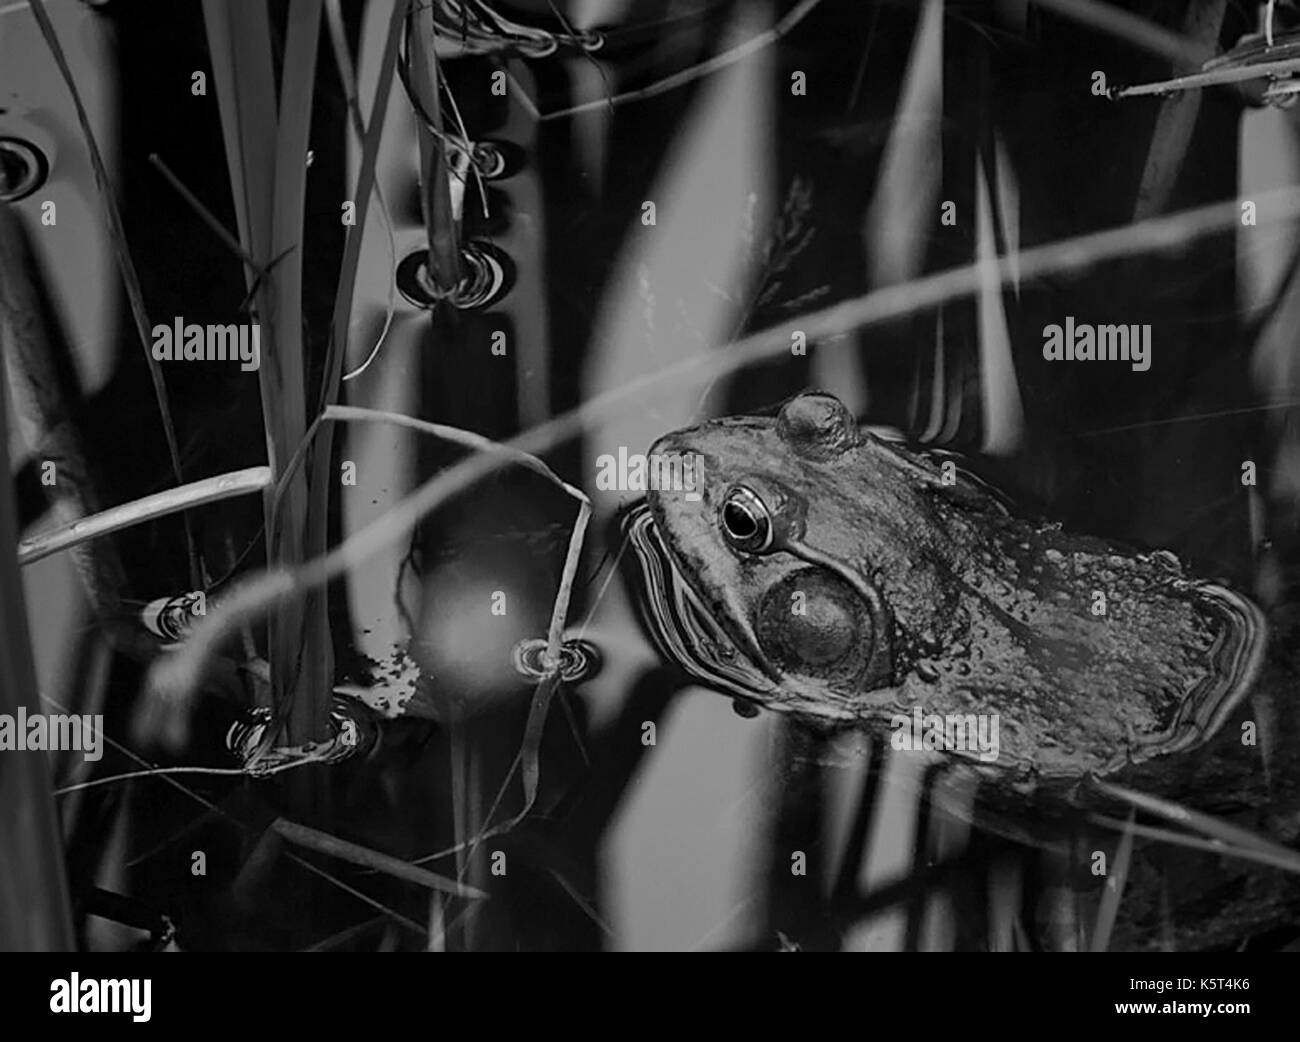 Le noir et blanc d'un bullfrog caché parmi les roseaux dans un étang Banque D'Images